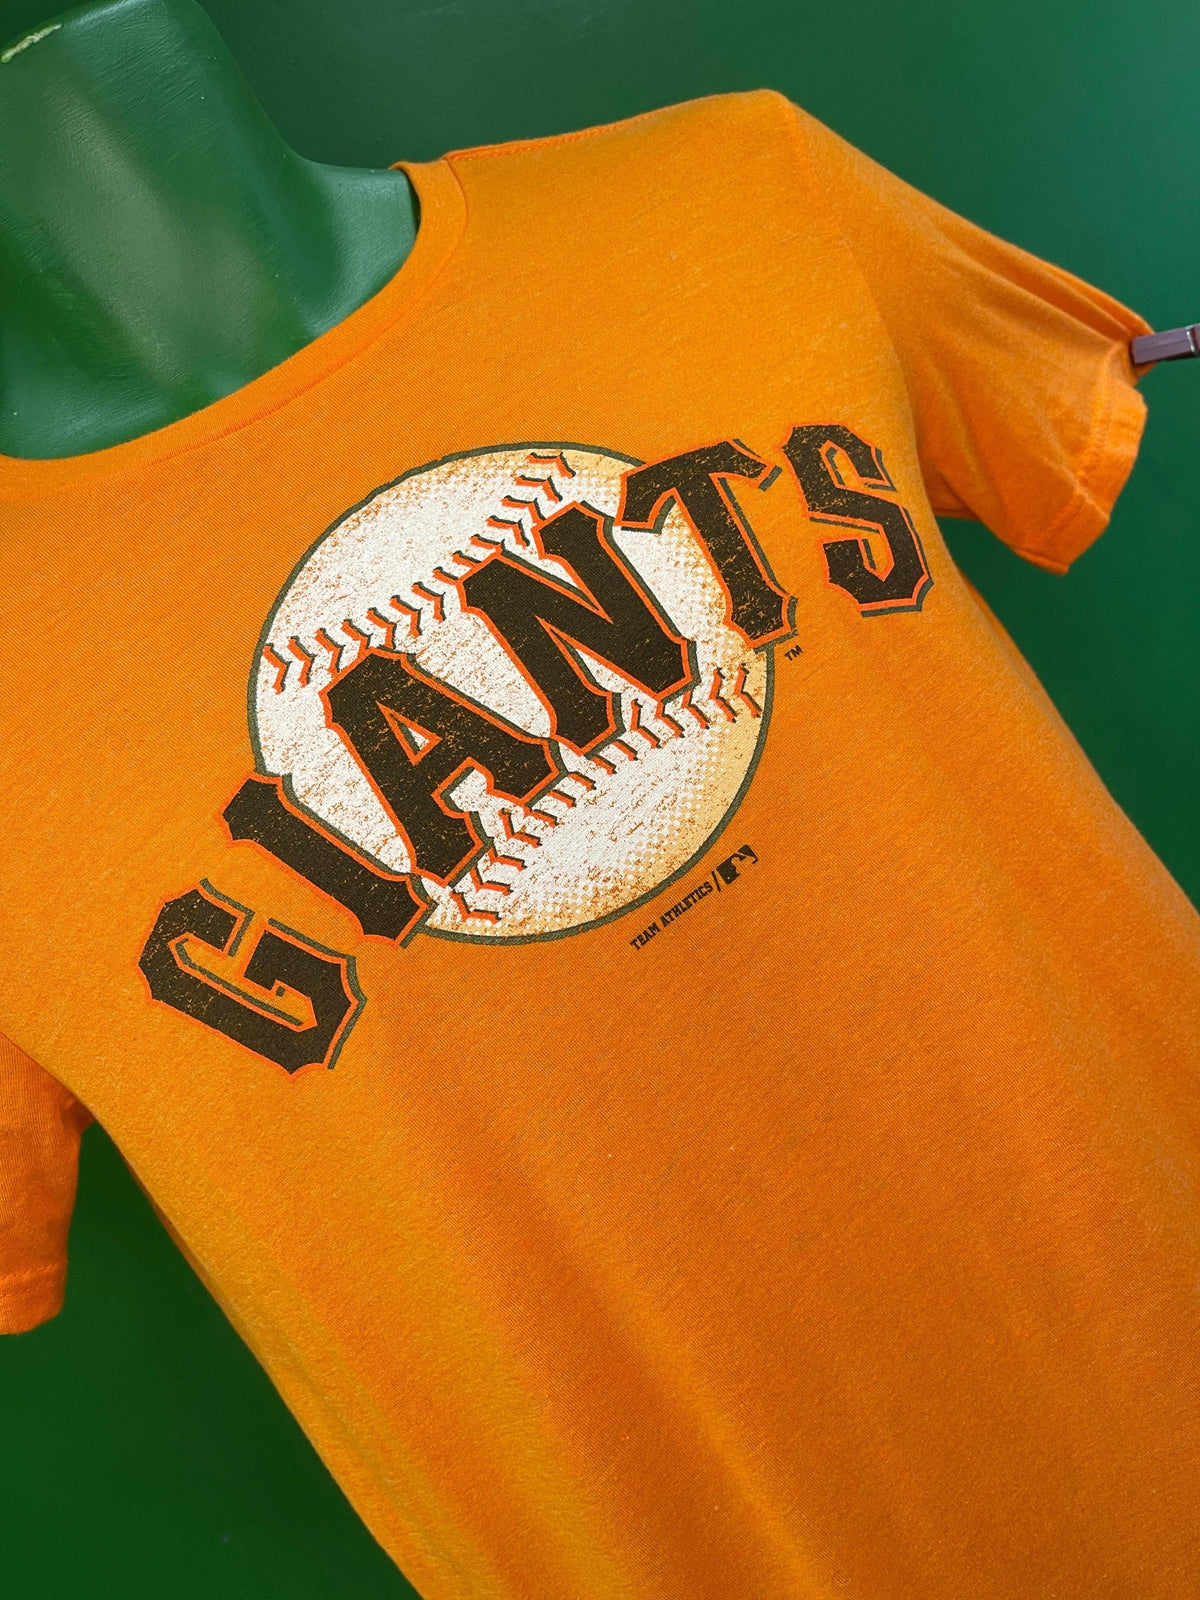 MLB San Francisco Giants Orange T-shirt Youth X-Large 14-16